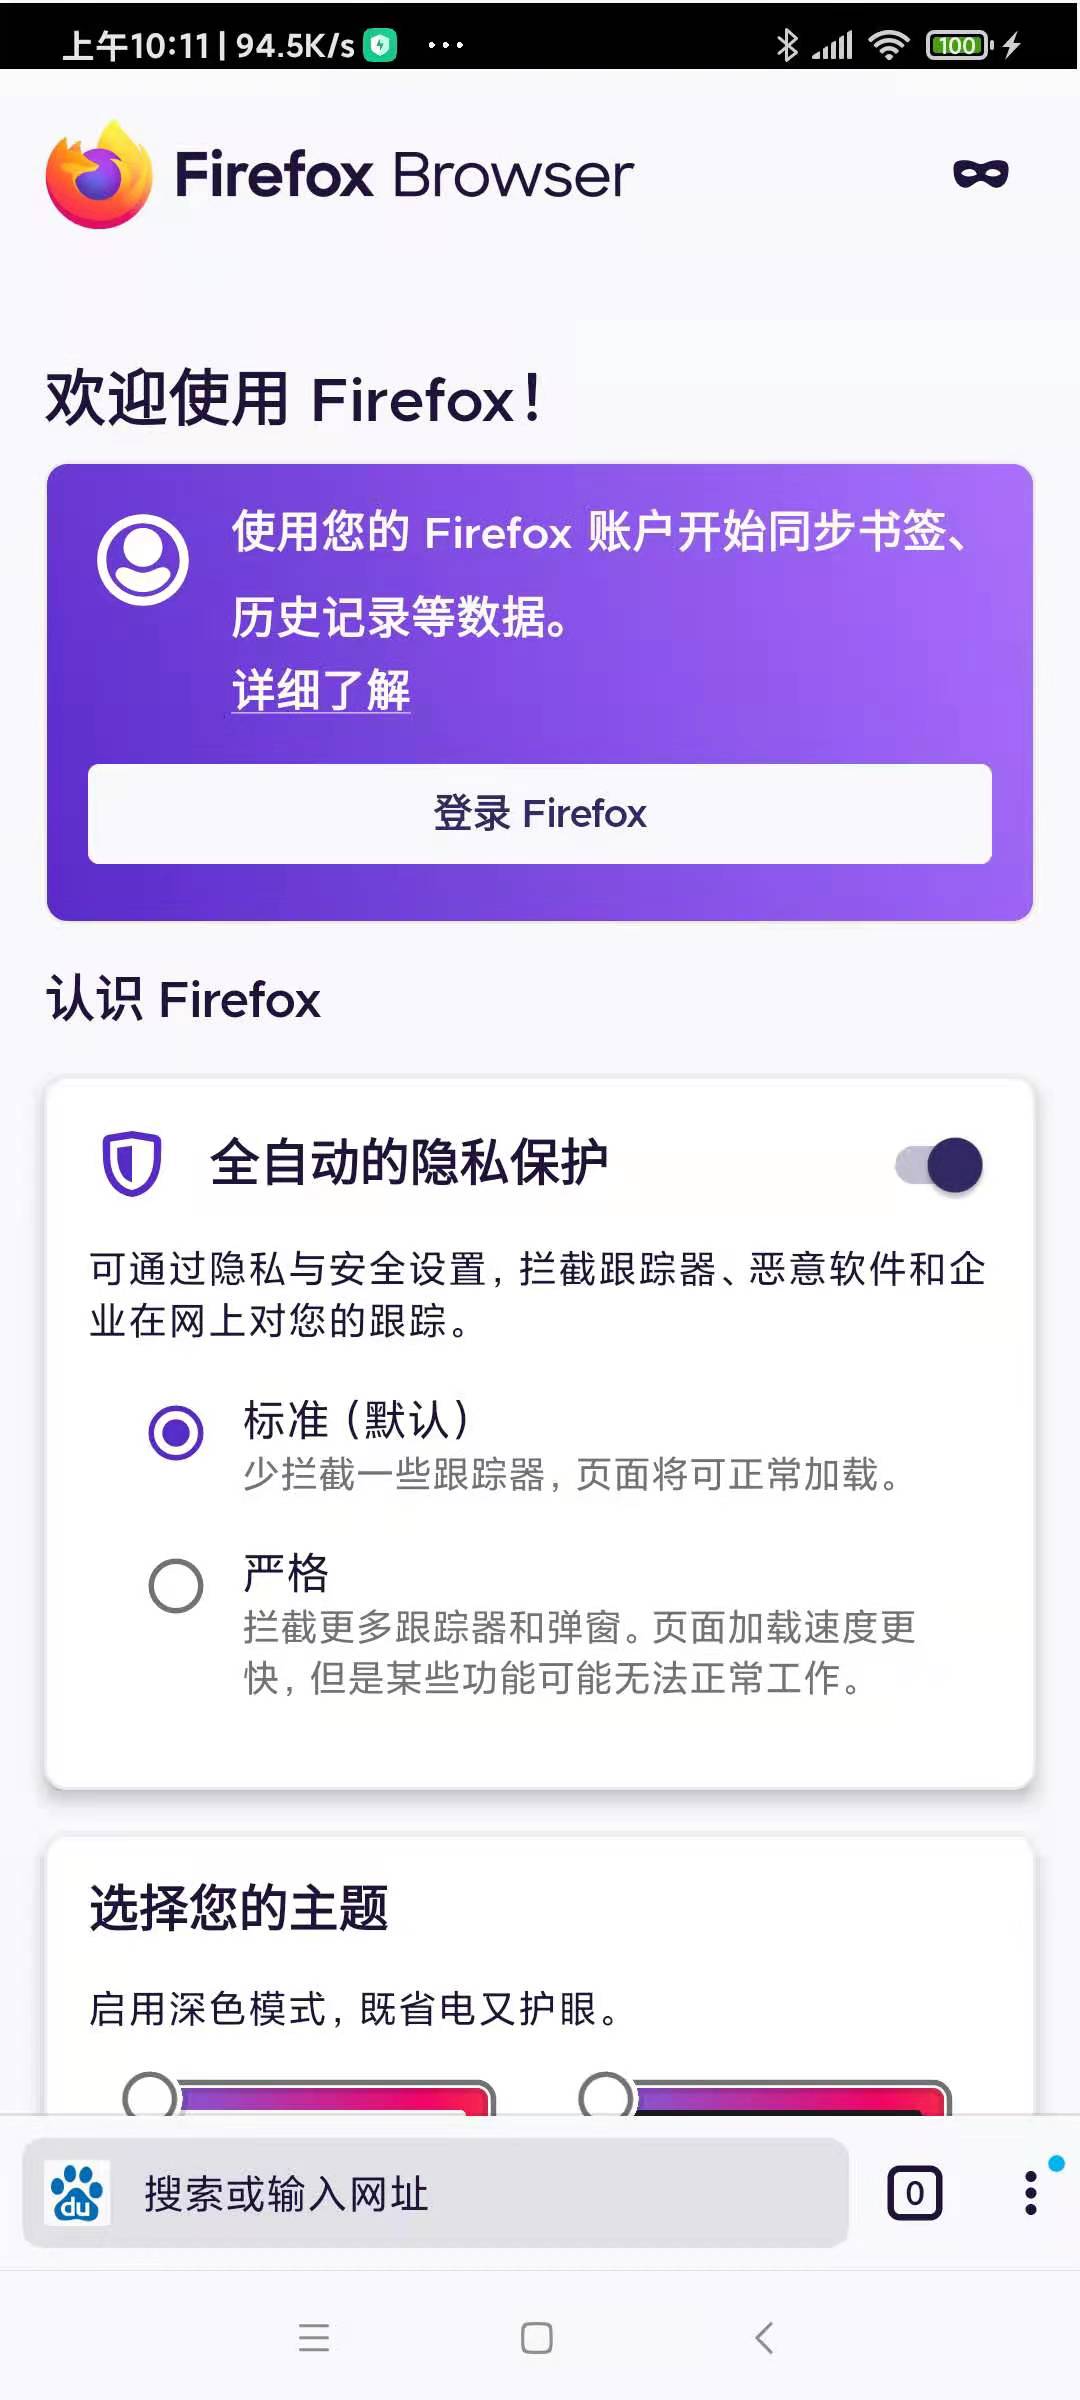 u2_firfox_browser_info